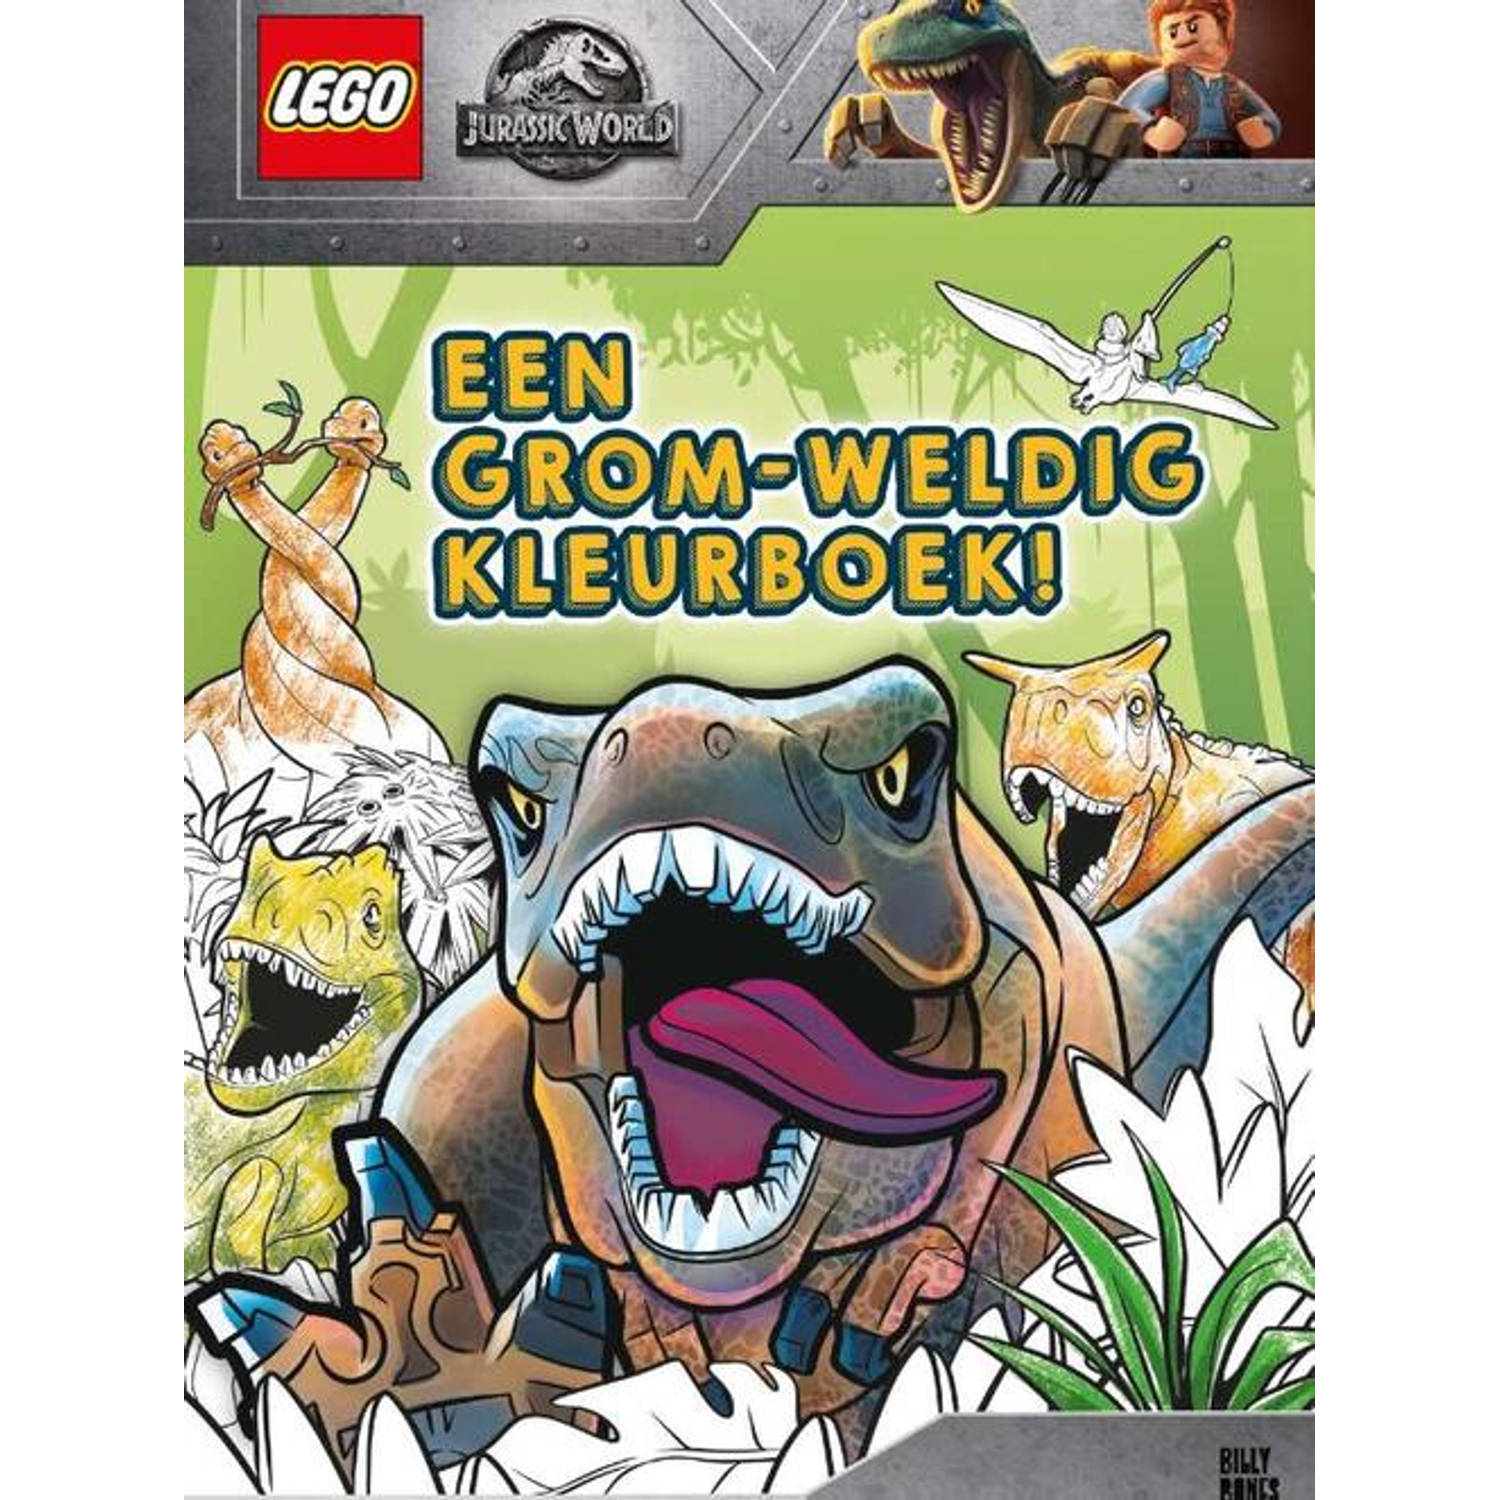 Lego Jurassic World Een Grom-weldig Kleurboek